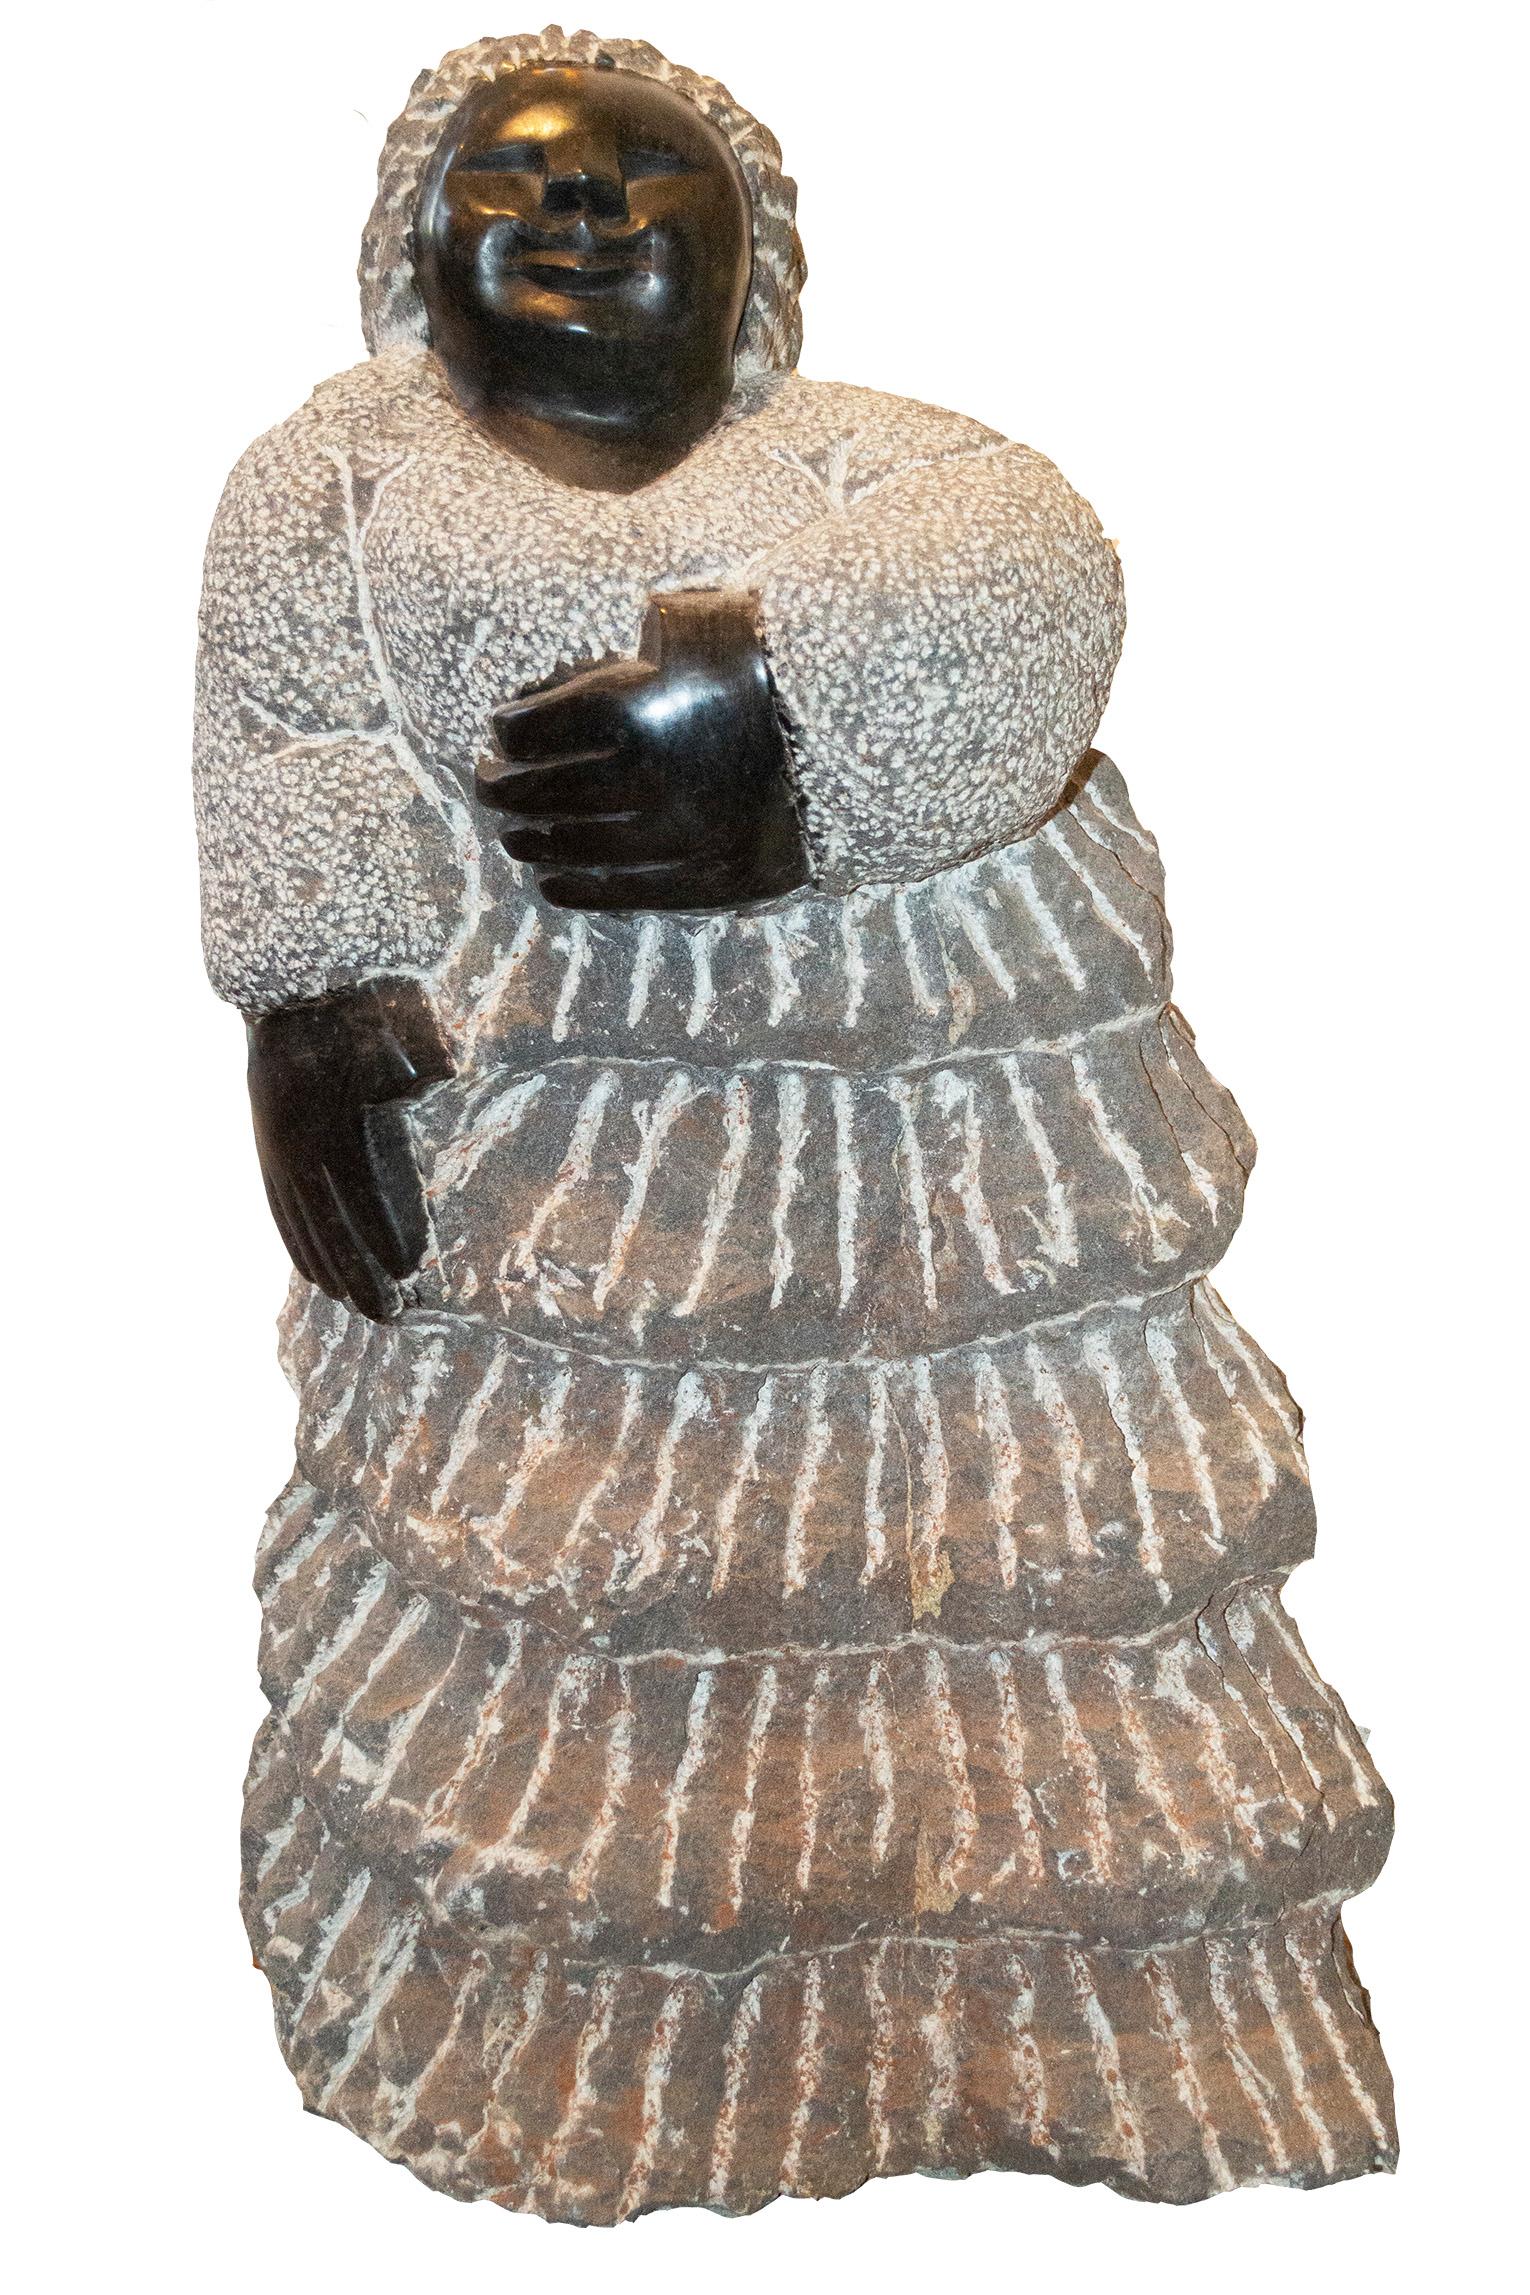 feeling Heart Beat" ist eine originelle schwarze Serpentin-Skulptur der berühmten Shona-Künstlerin Colleen Madamombe aus der zweiten Generation. Die Skulptur zeigt eine Figur, die für Madamombes Werk typisch ist: eine Frau mit rundem Gesicht, die